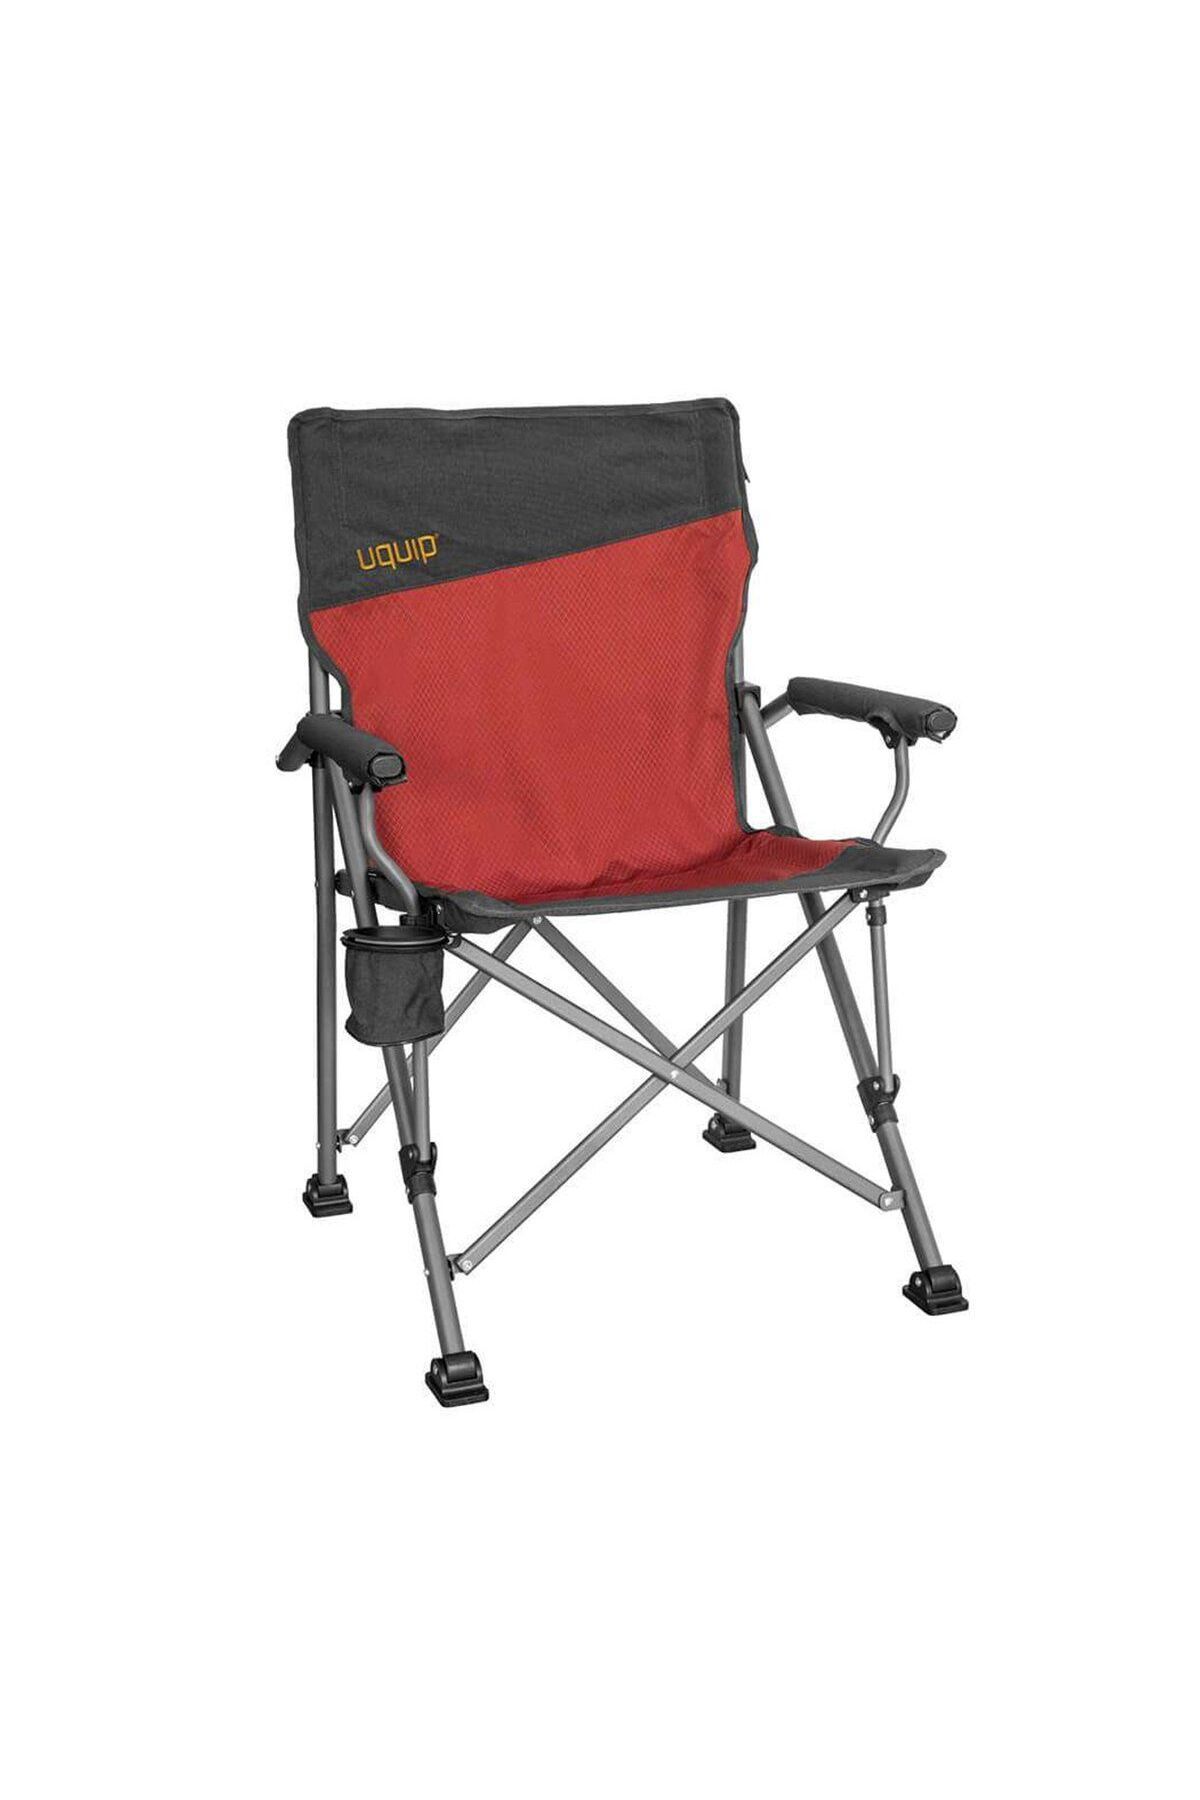 Uquip Roxy Yüksek Konforlu & Takviyeli Katlanır Kamp Sandalyesi Red